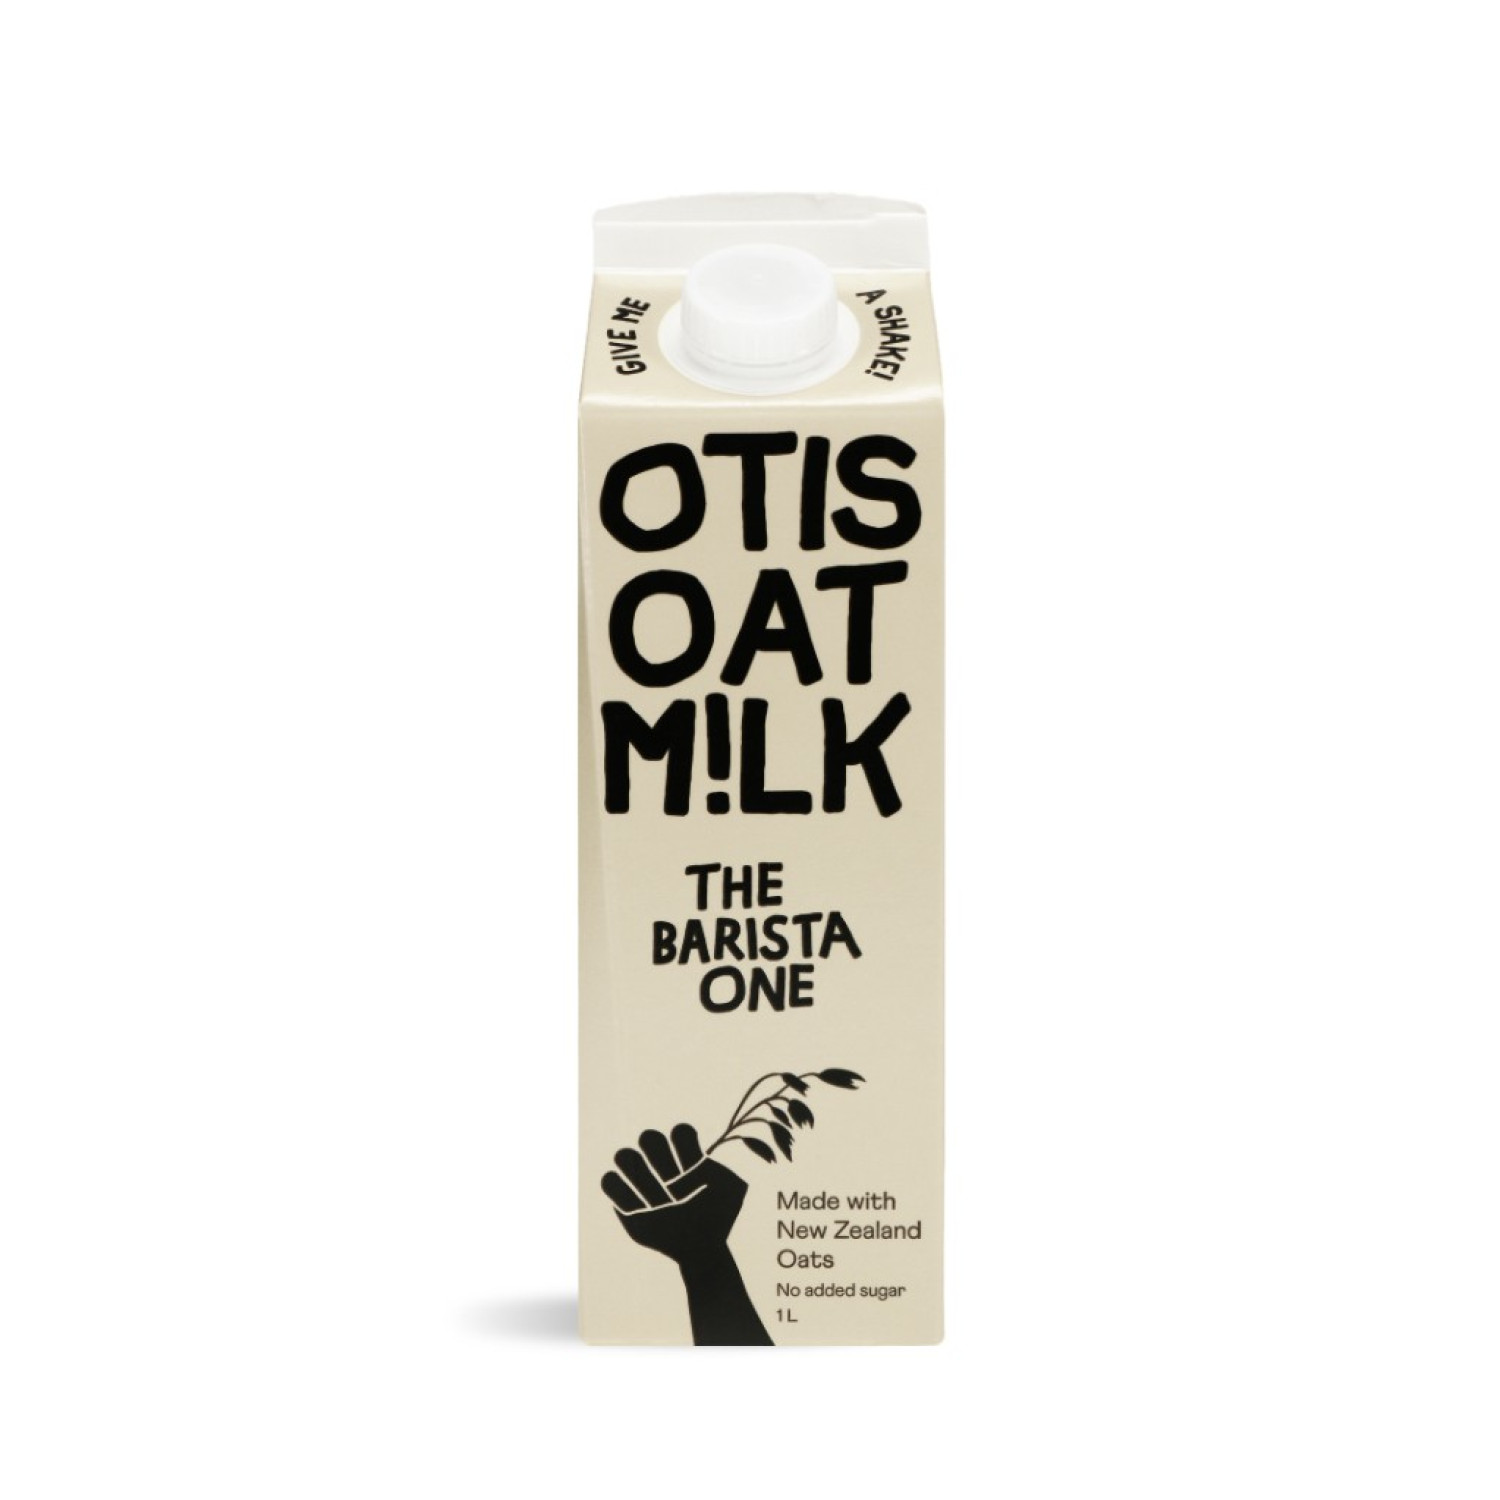 otis-oat-milk-the-barista-1-l-exp-date-1223-654b4574b5003.jpeg